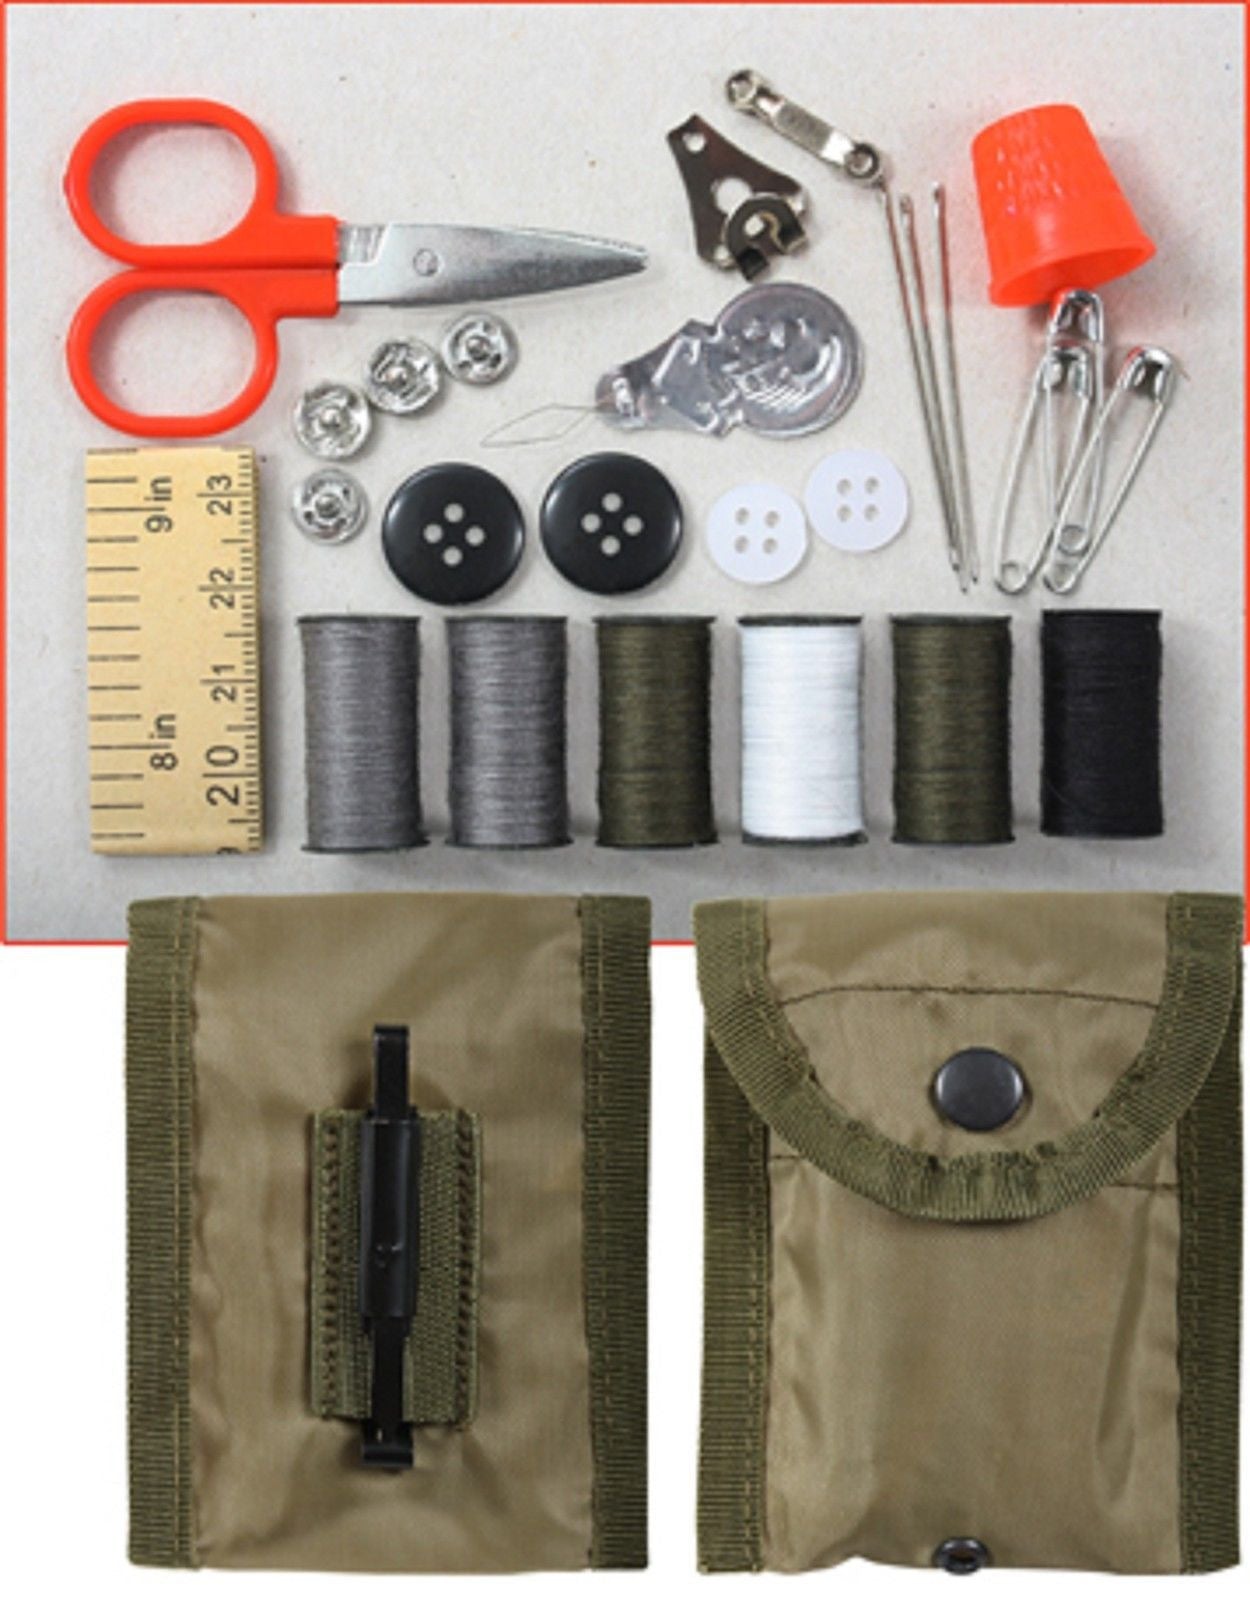 Sewing Kit Olive Drab G.I. Lightweight Sew Kits w/ Accessories